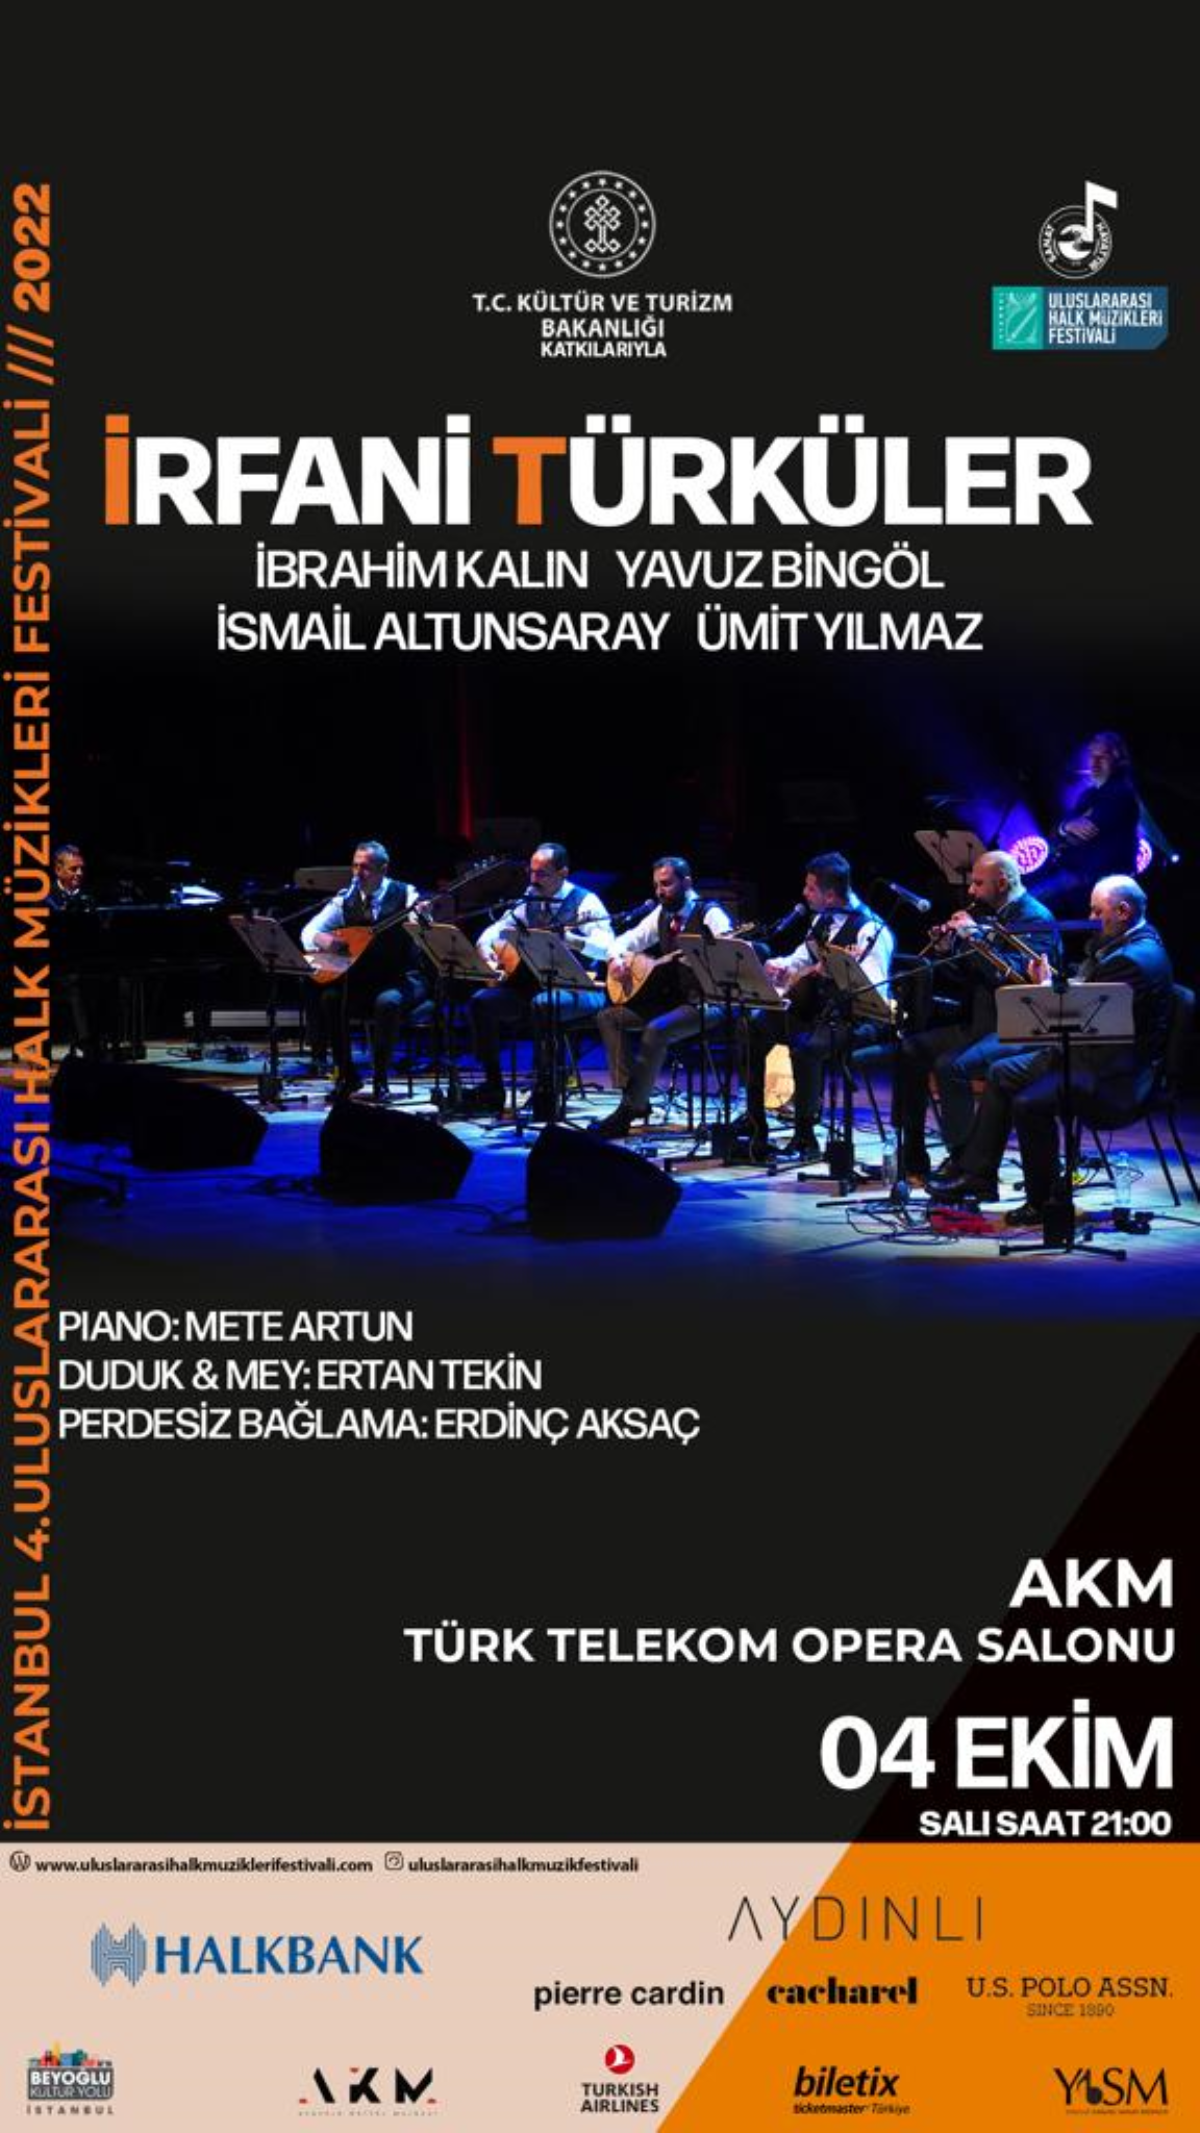 İstanbul 4. Uluslararası Halk Müzikleri Festivali başlıyor